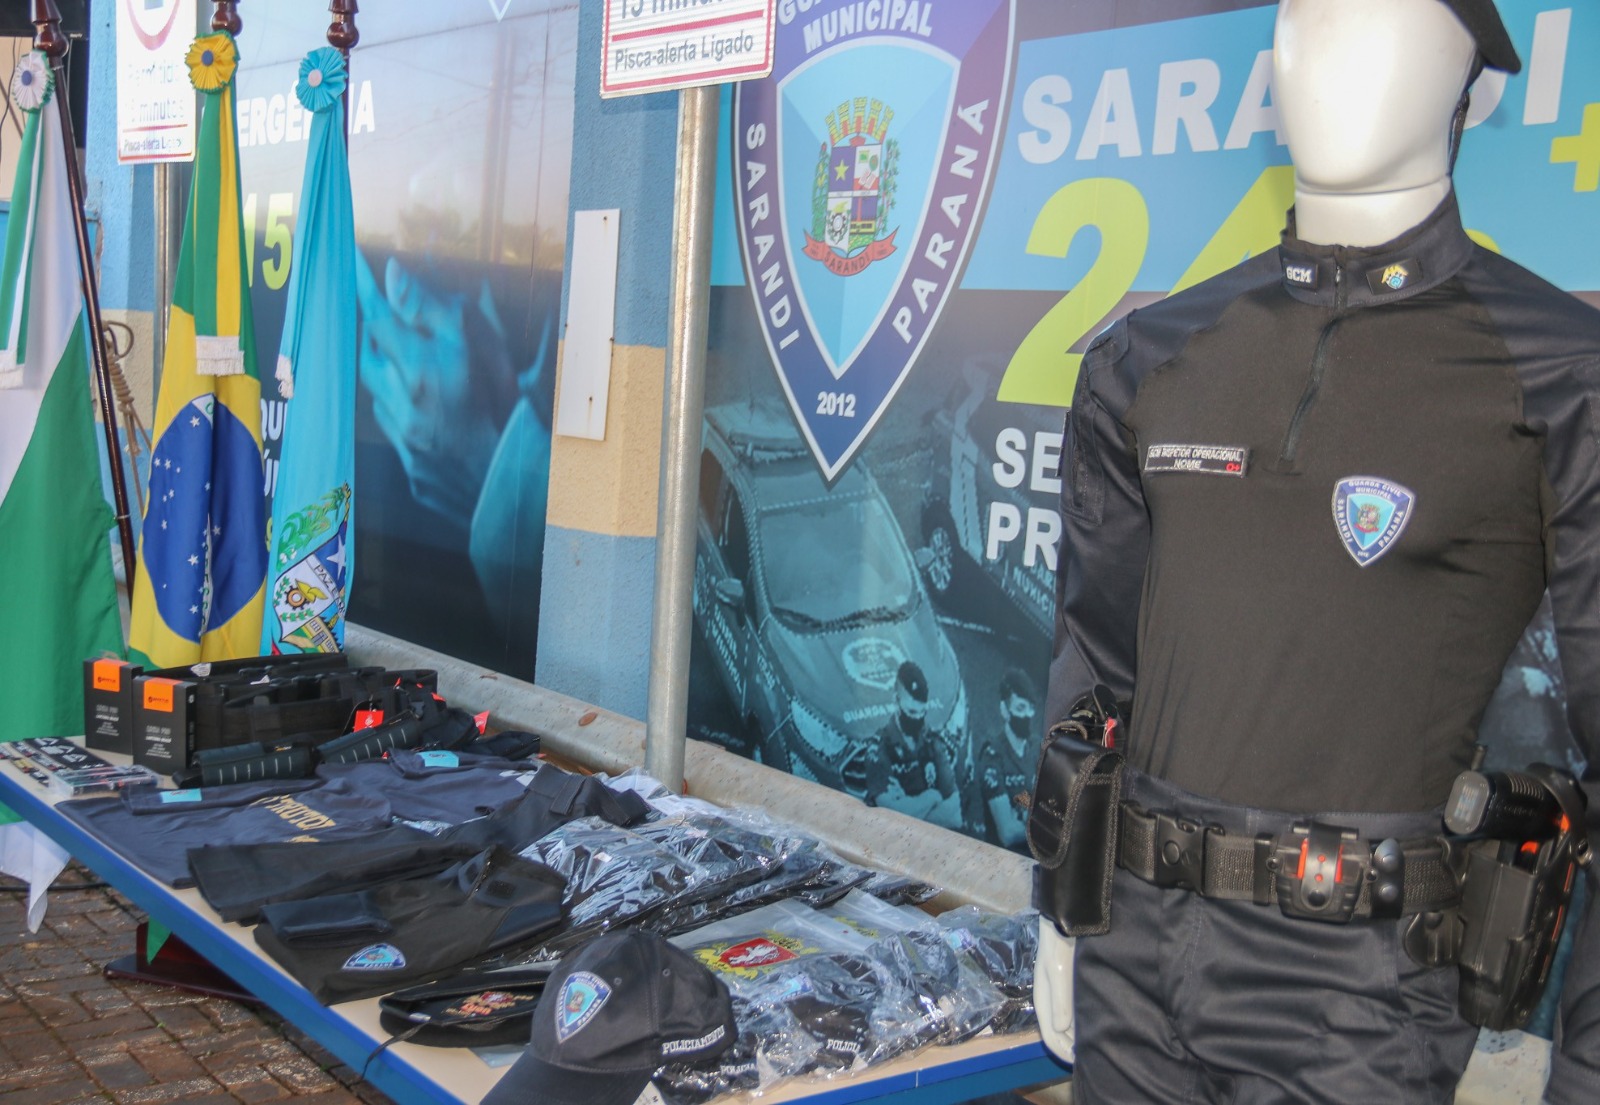 Guarda Civil  Municipal apresenta novos uniformes, nova identidade visual e Volpato anuncia avanços na segurança